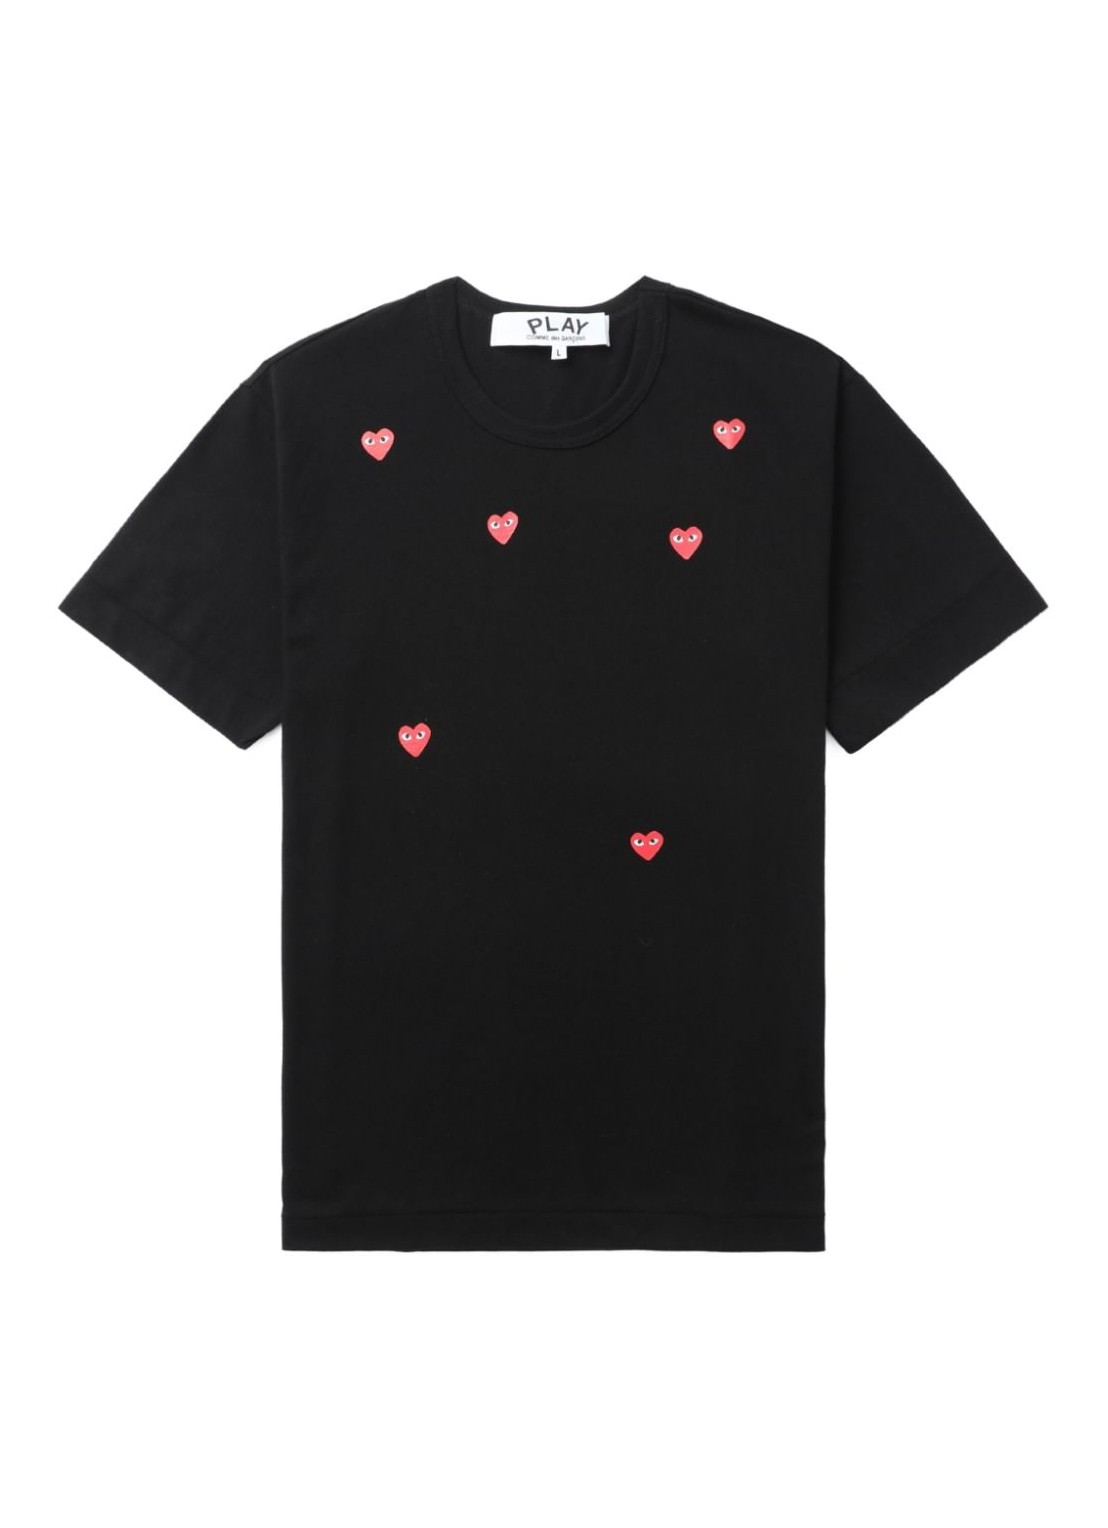 Camiseta comme des garcons t-shirt manmany heart short sleeve t-shirt - axt338051 black talla XXL
 